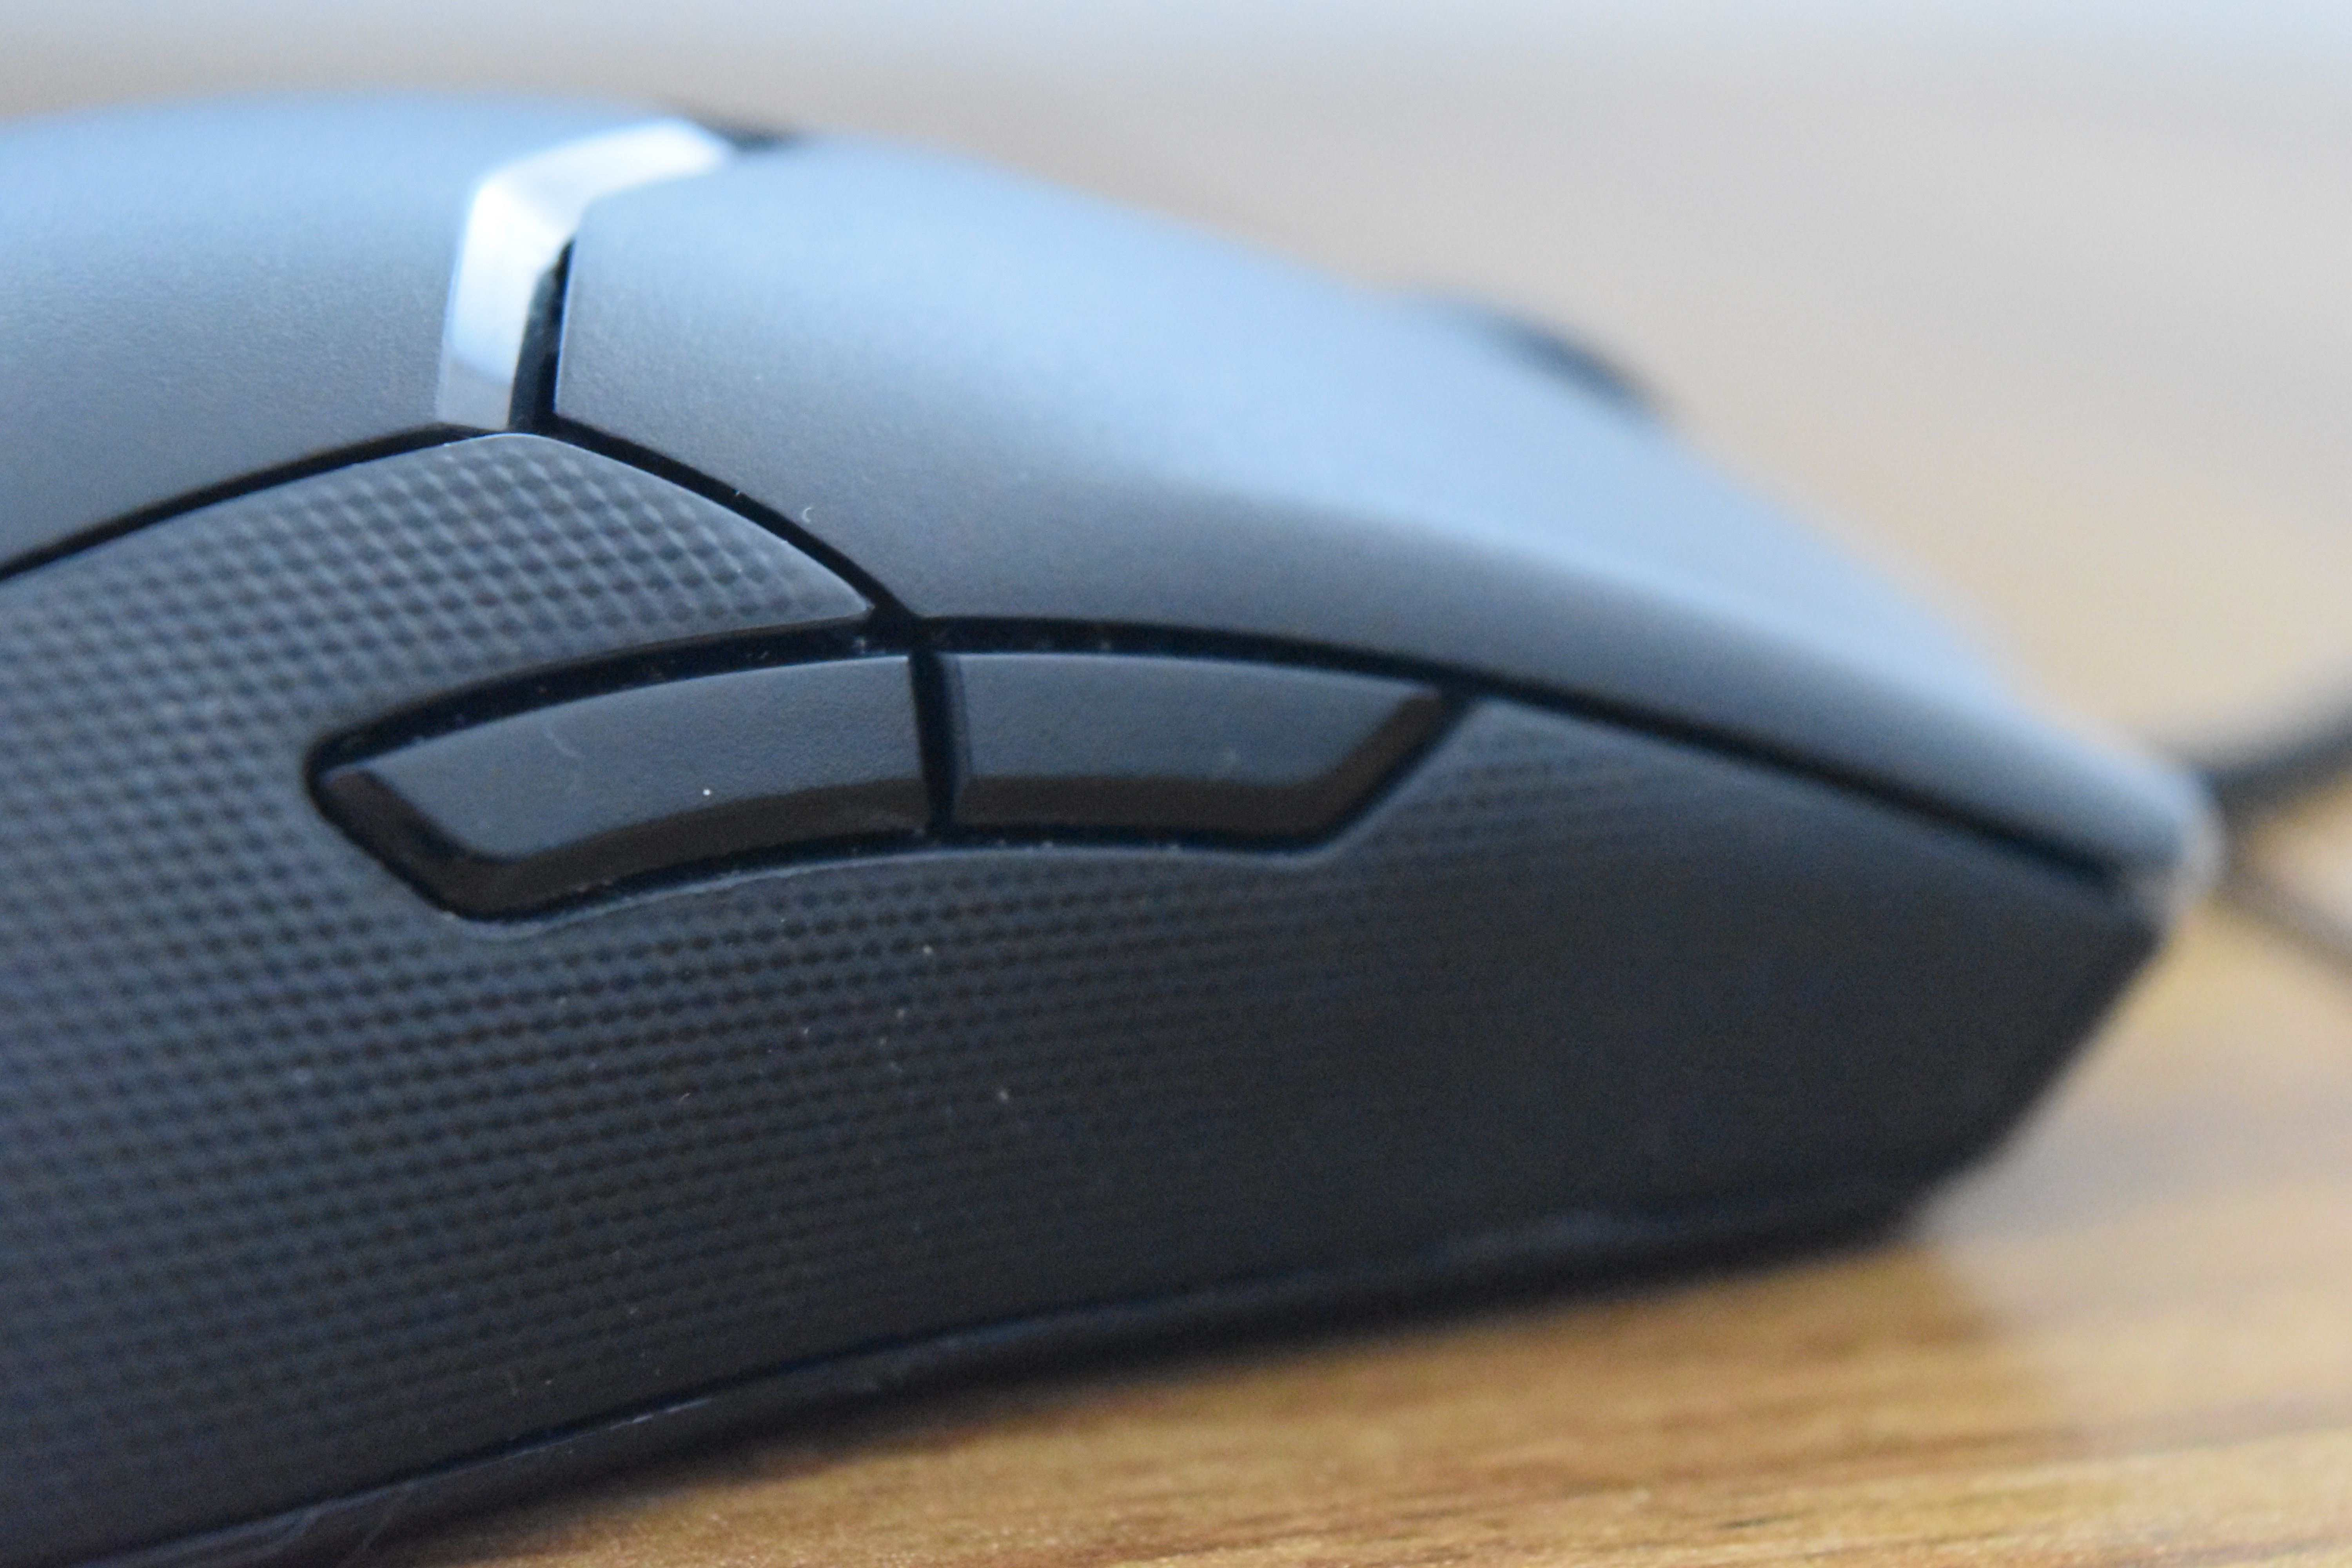 Vista lateral del ratón con dos de sus botones personalizables